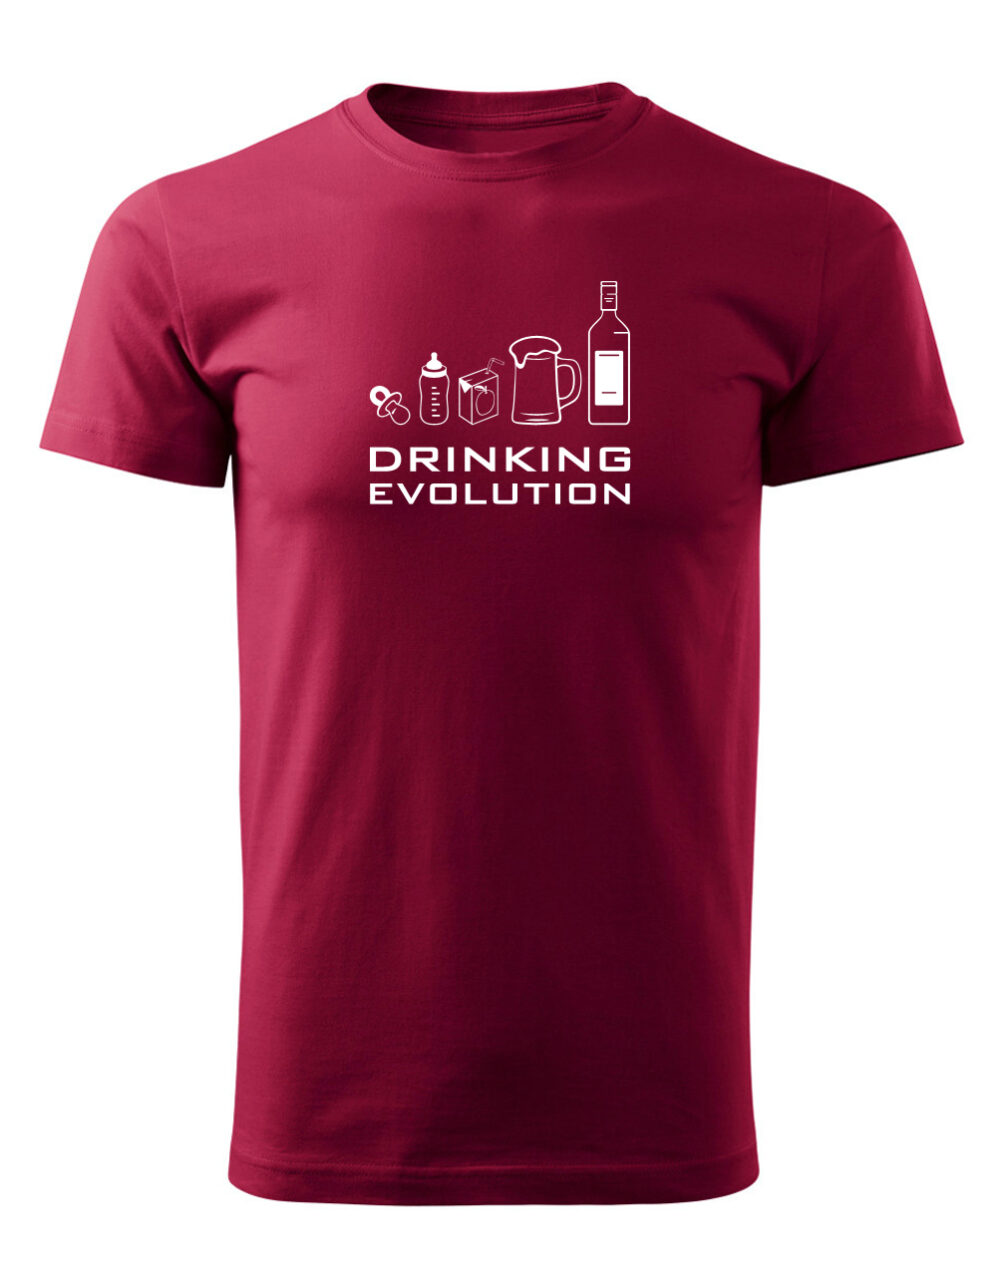 Pánské tričko s potiskem Drinking evolution granátová